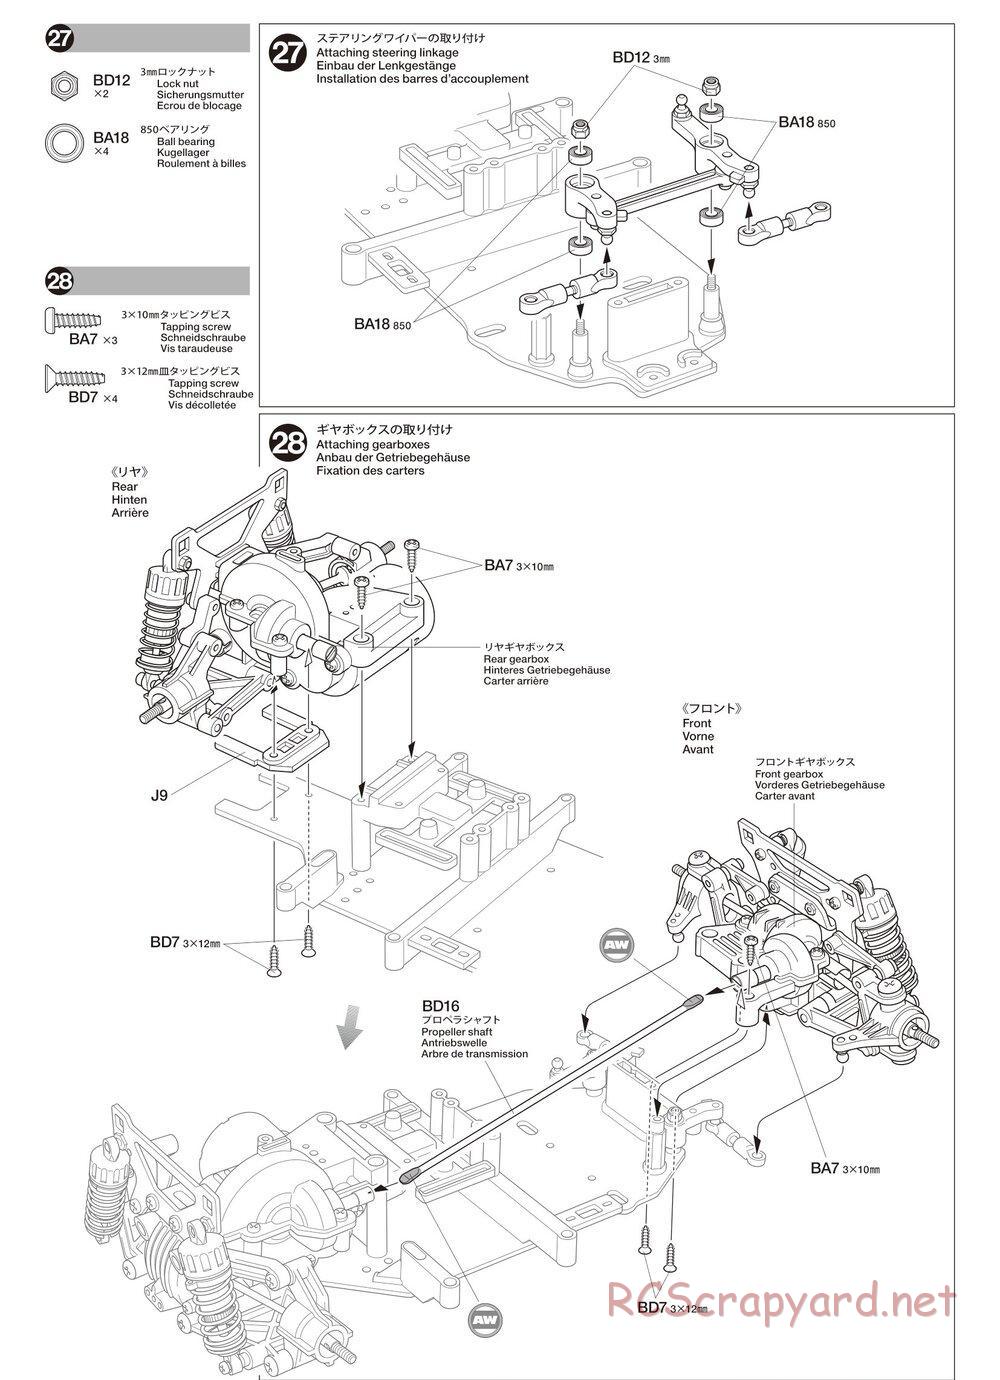 Tamiya - TA02SW Chassis - Manual - Page 13